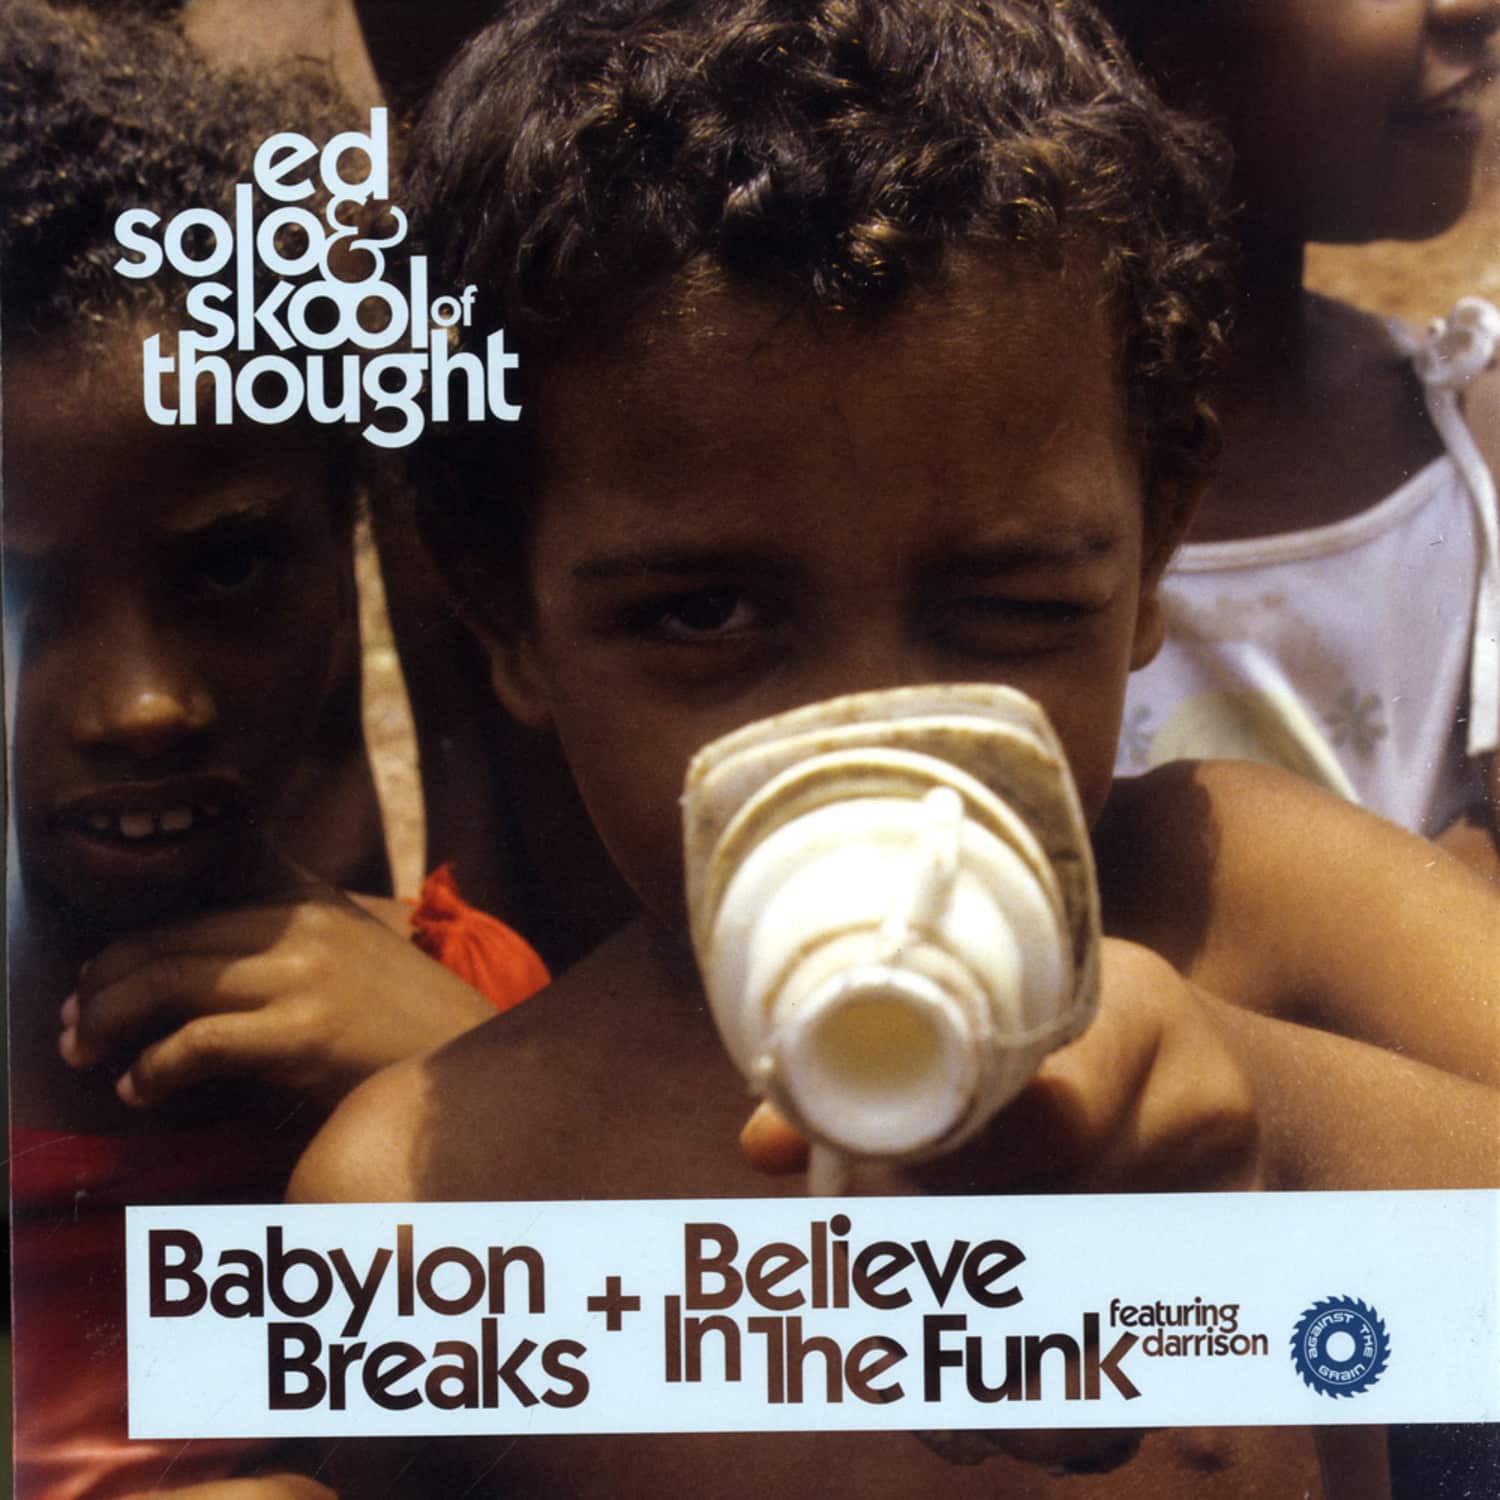 Ed Solo & Skool Of Thought - BABYLON BREAKS/BELIEVE IN THE